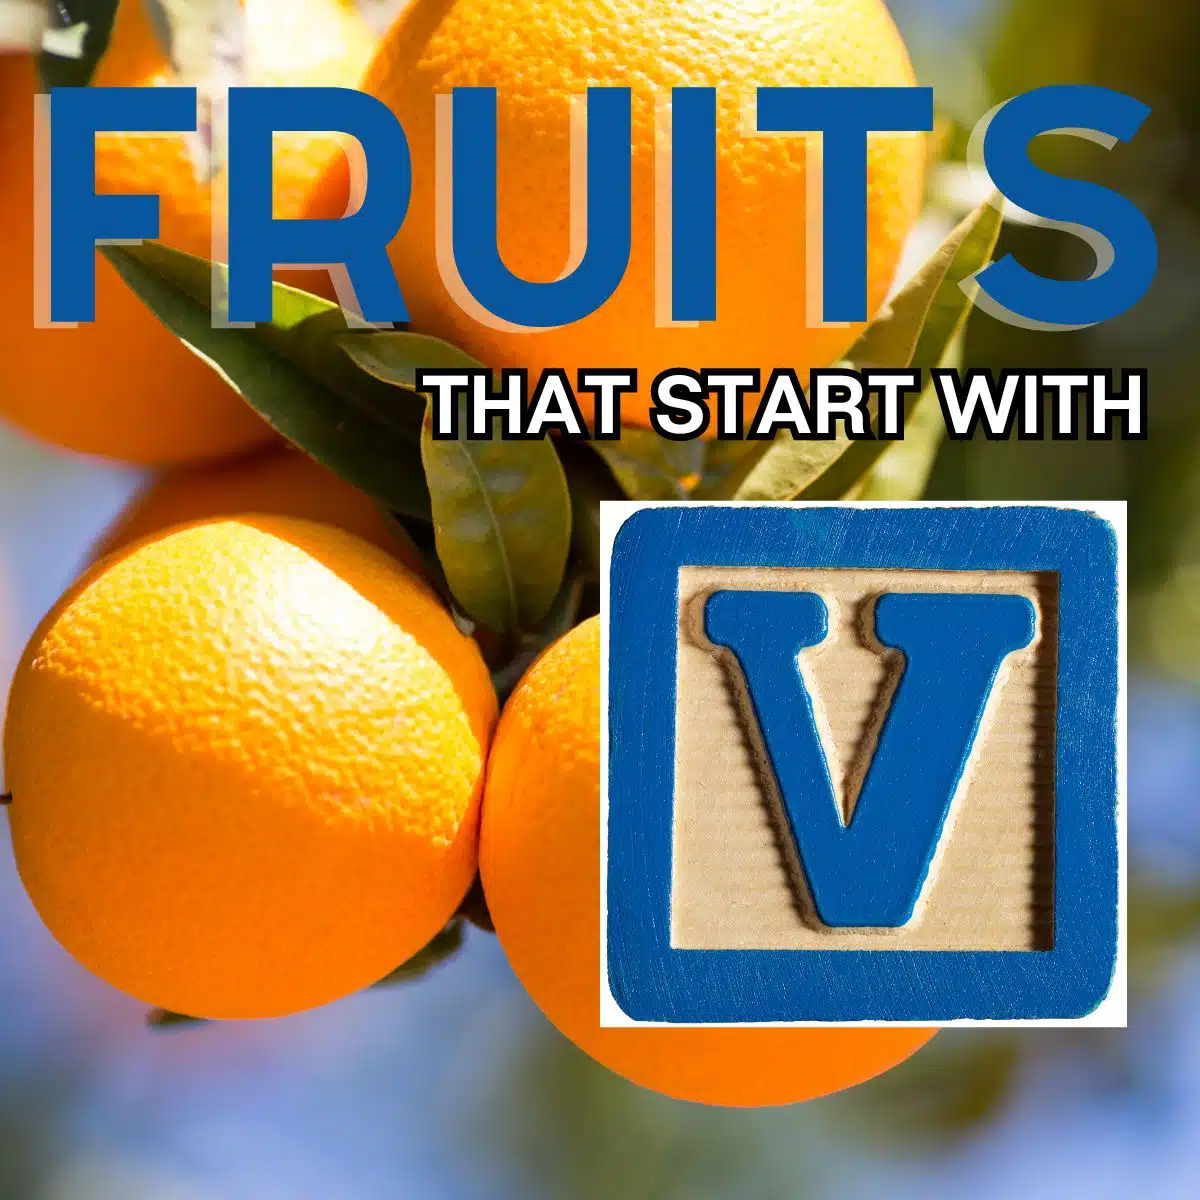 발렌시아 과일이 특징인 문자 V로 시작하는 과일의 정사각형 이미지입니다.